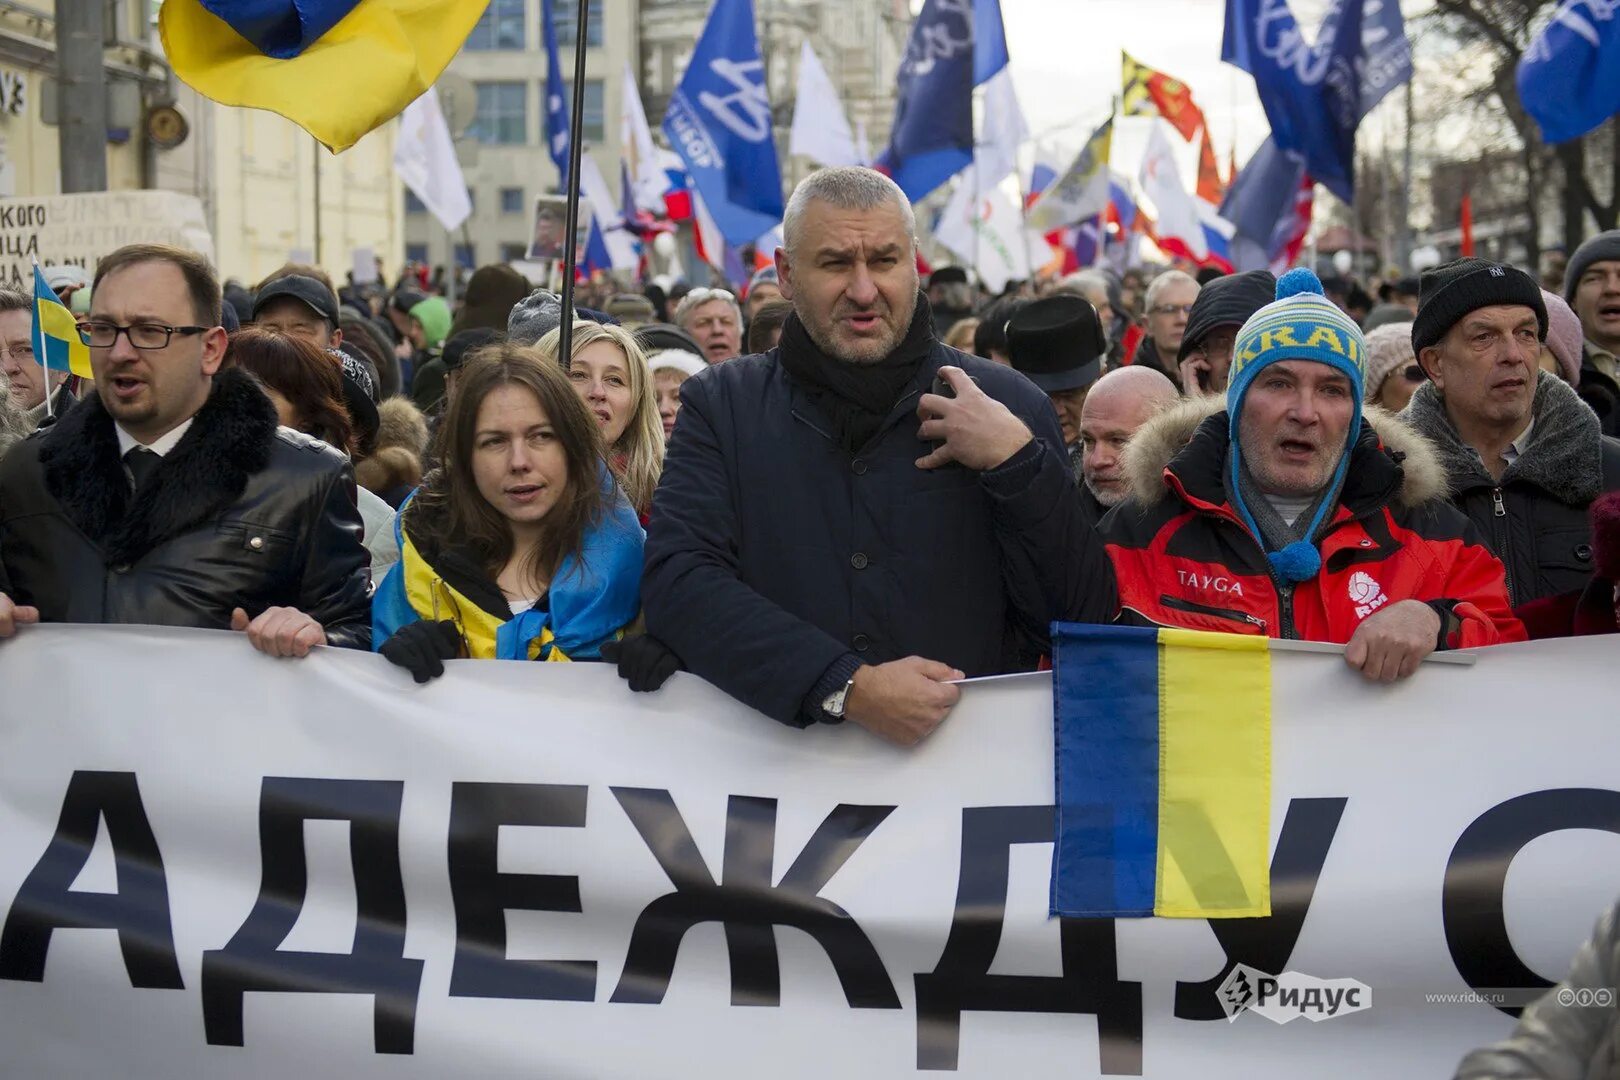 Политикус ру свежее. Шествия за Майдан. Проукраинские радикальные сообщества. Политикус.